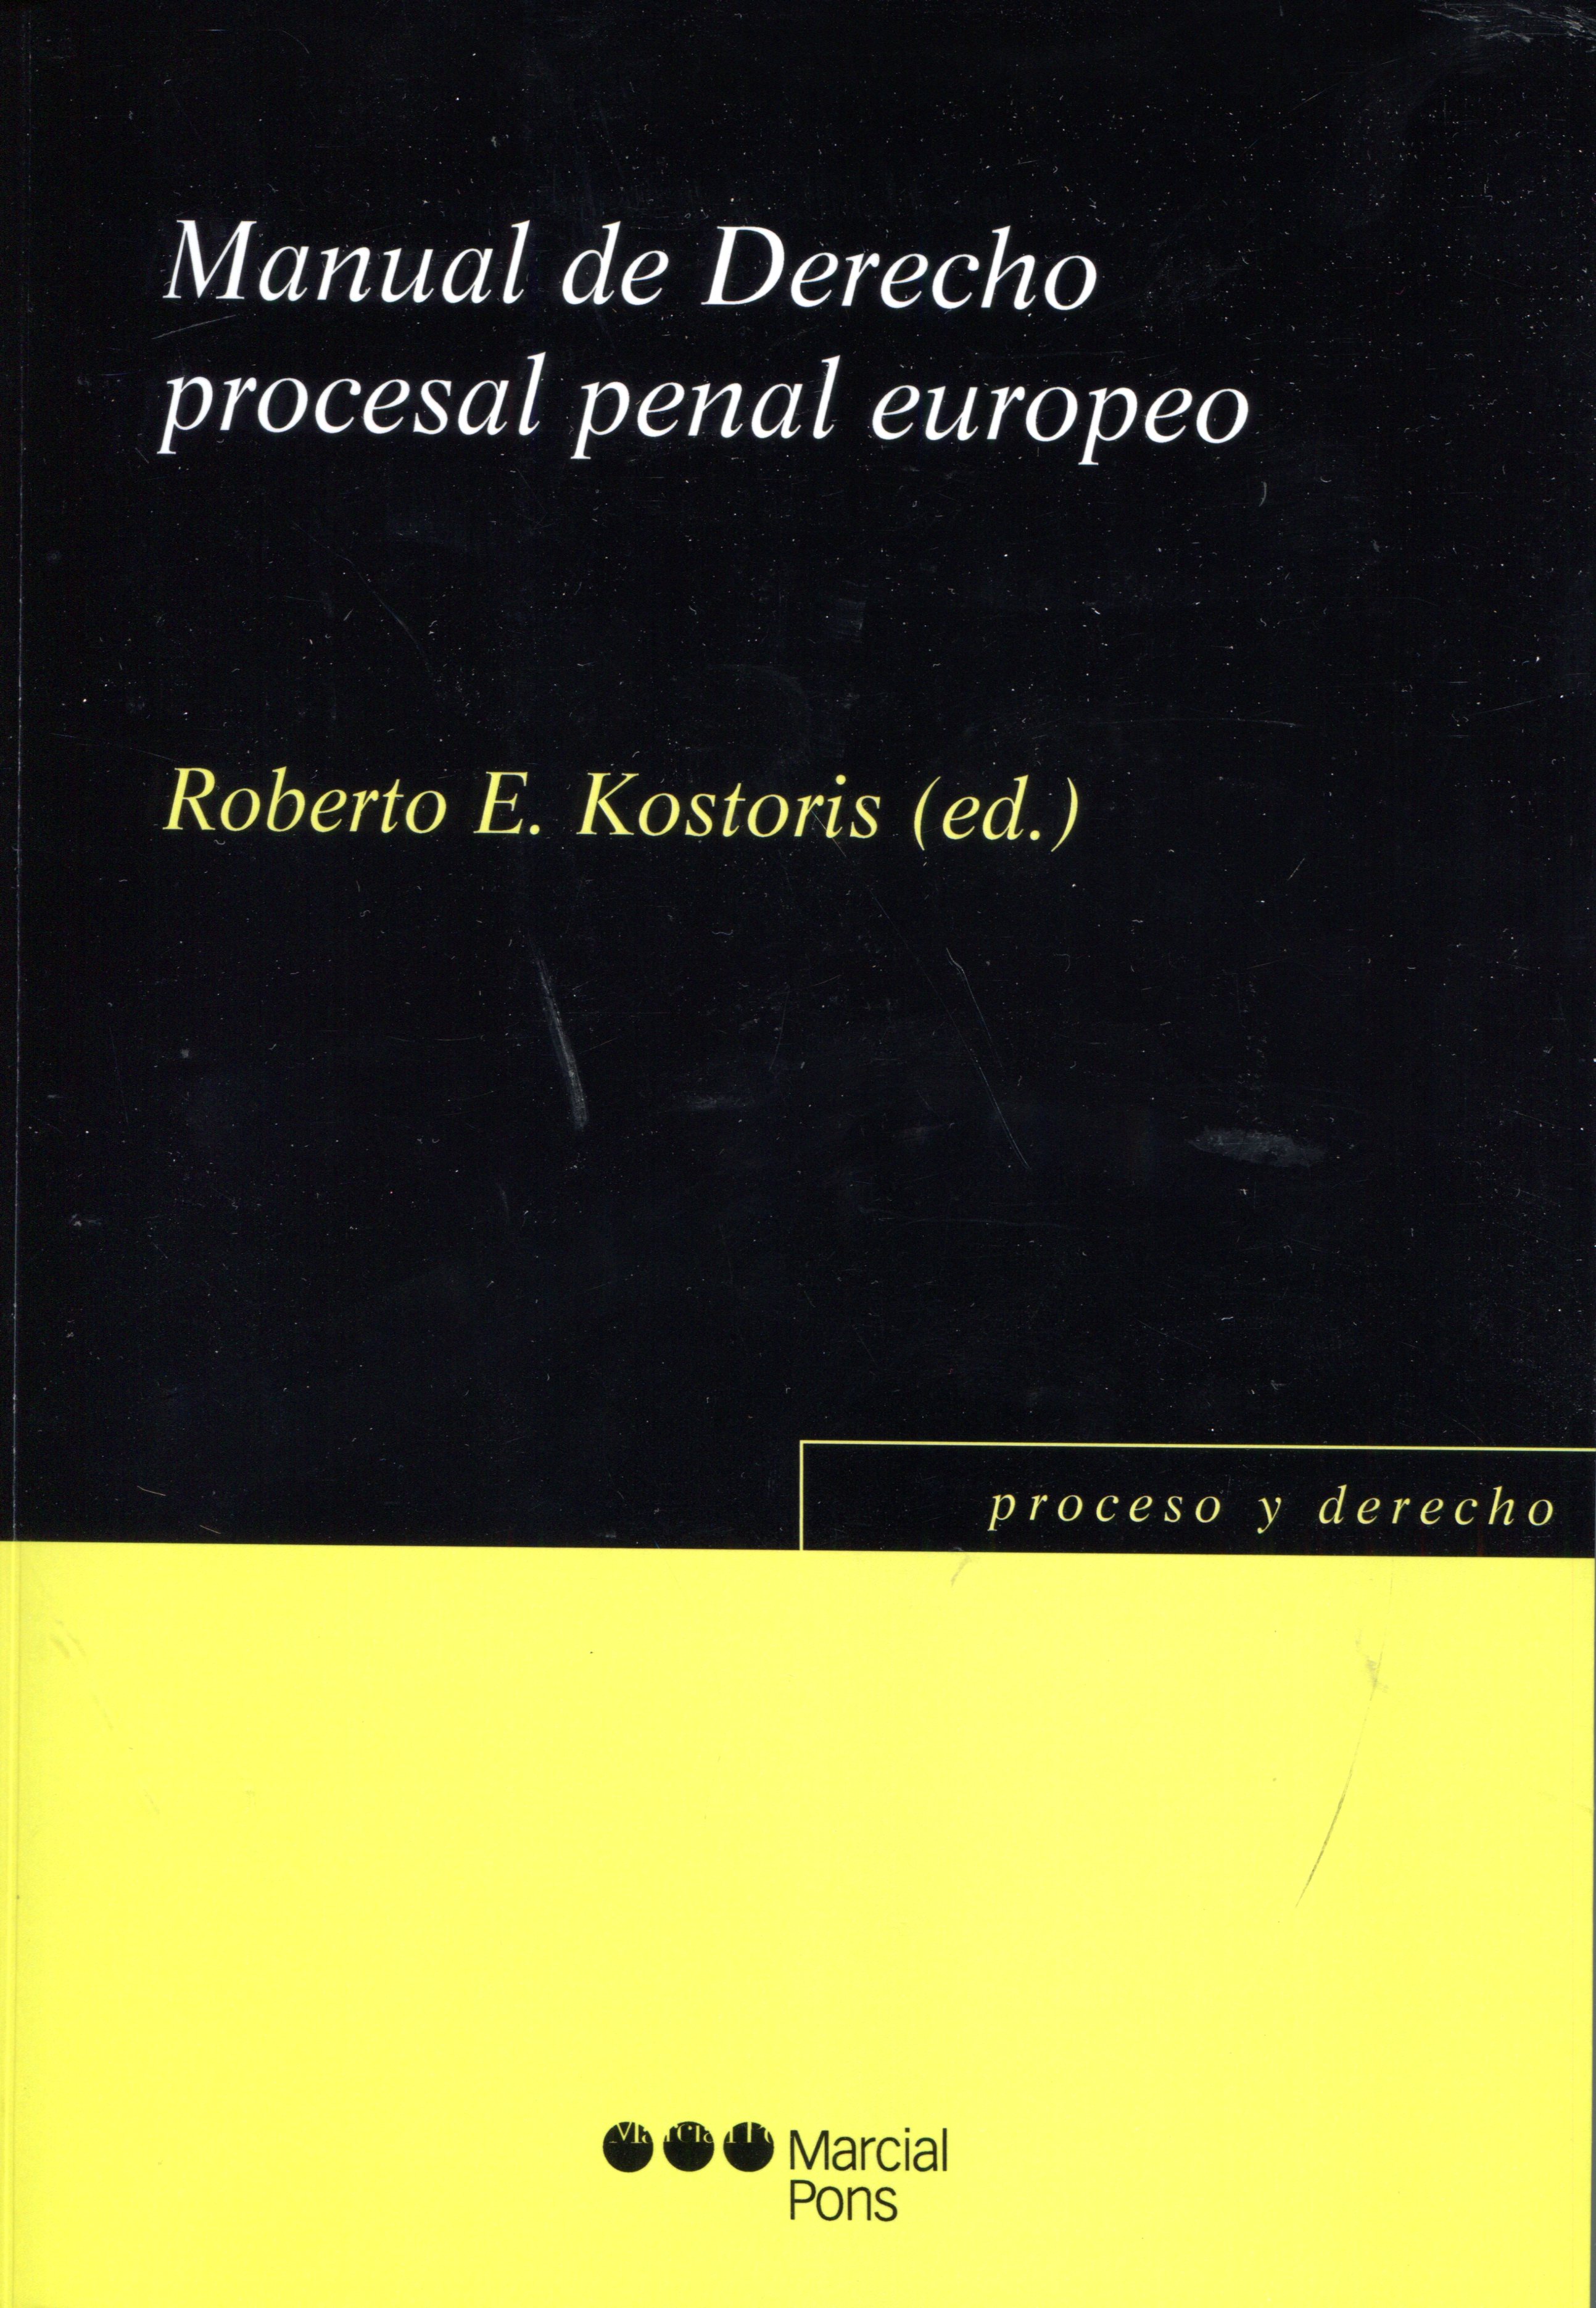 Manual de Derecho procesal penal europeo